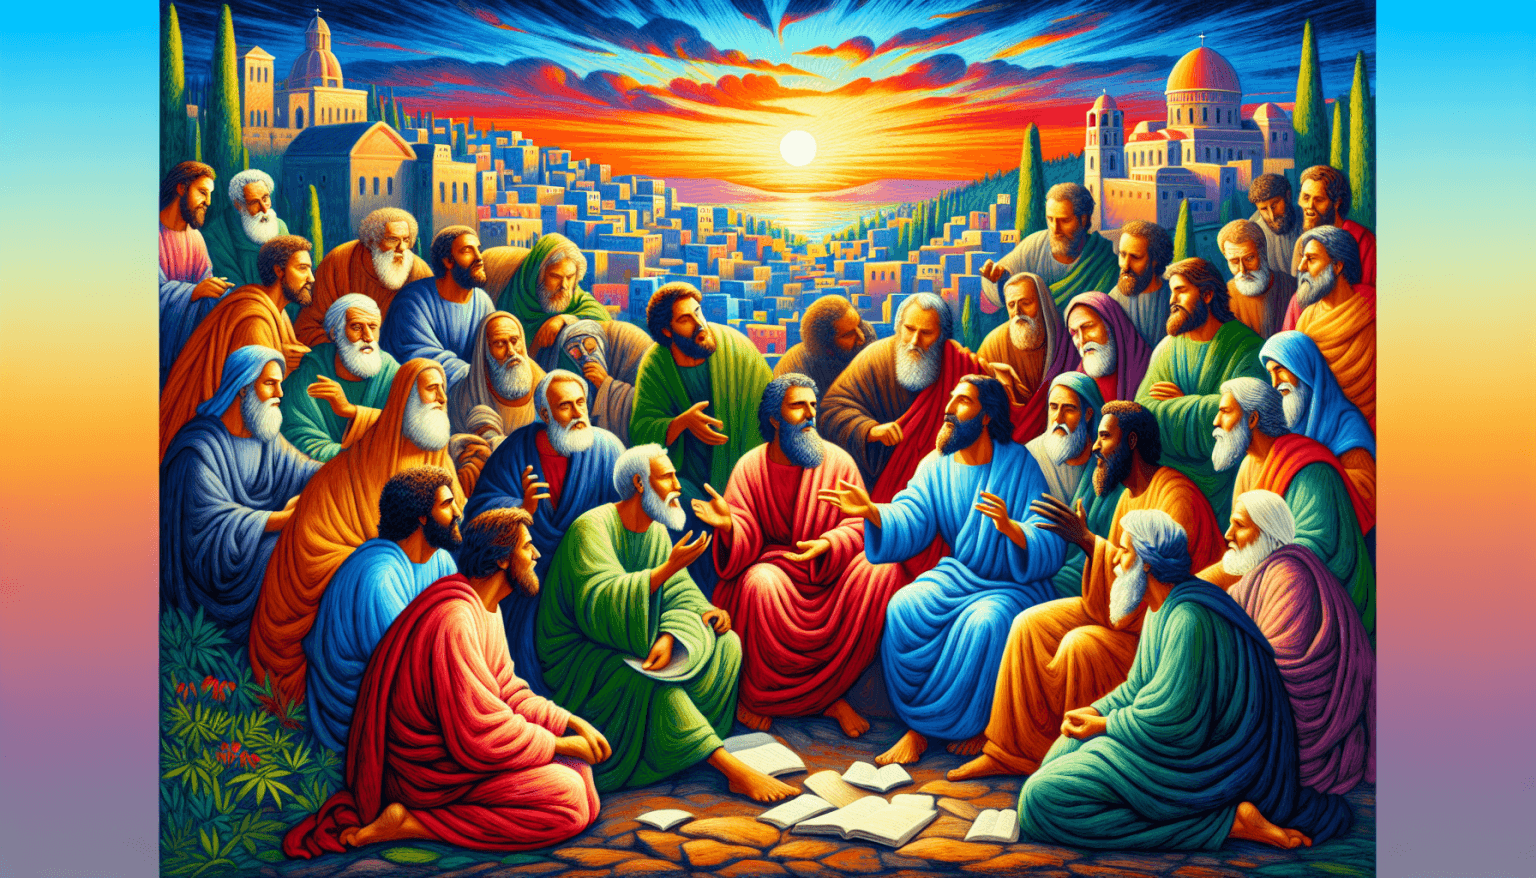 Una pintura renacentista que representa a los apóstoles reunidos y discutiendo fervientemente sobre cómo difundir las enseñanzas de Jesús por el mundo, en un paisaje de Jerusalén al amanecer.